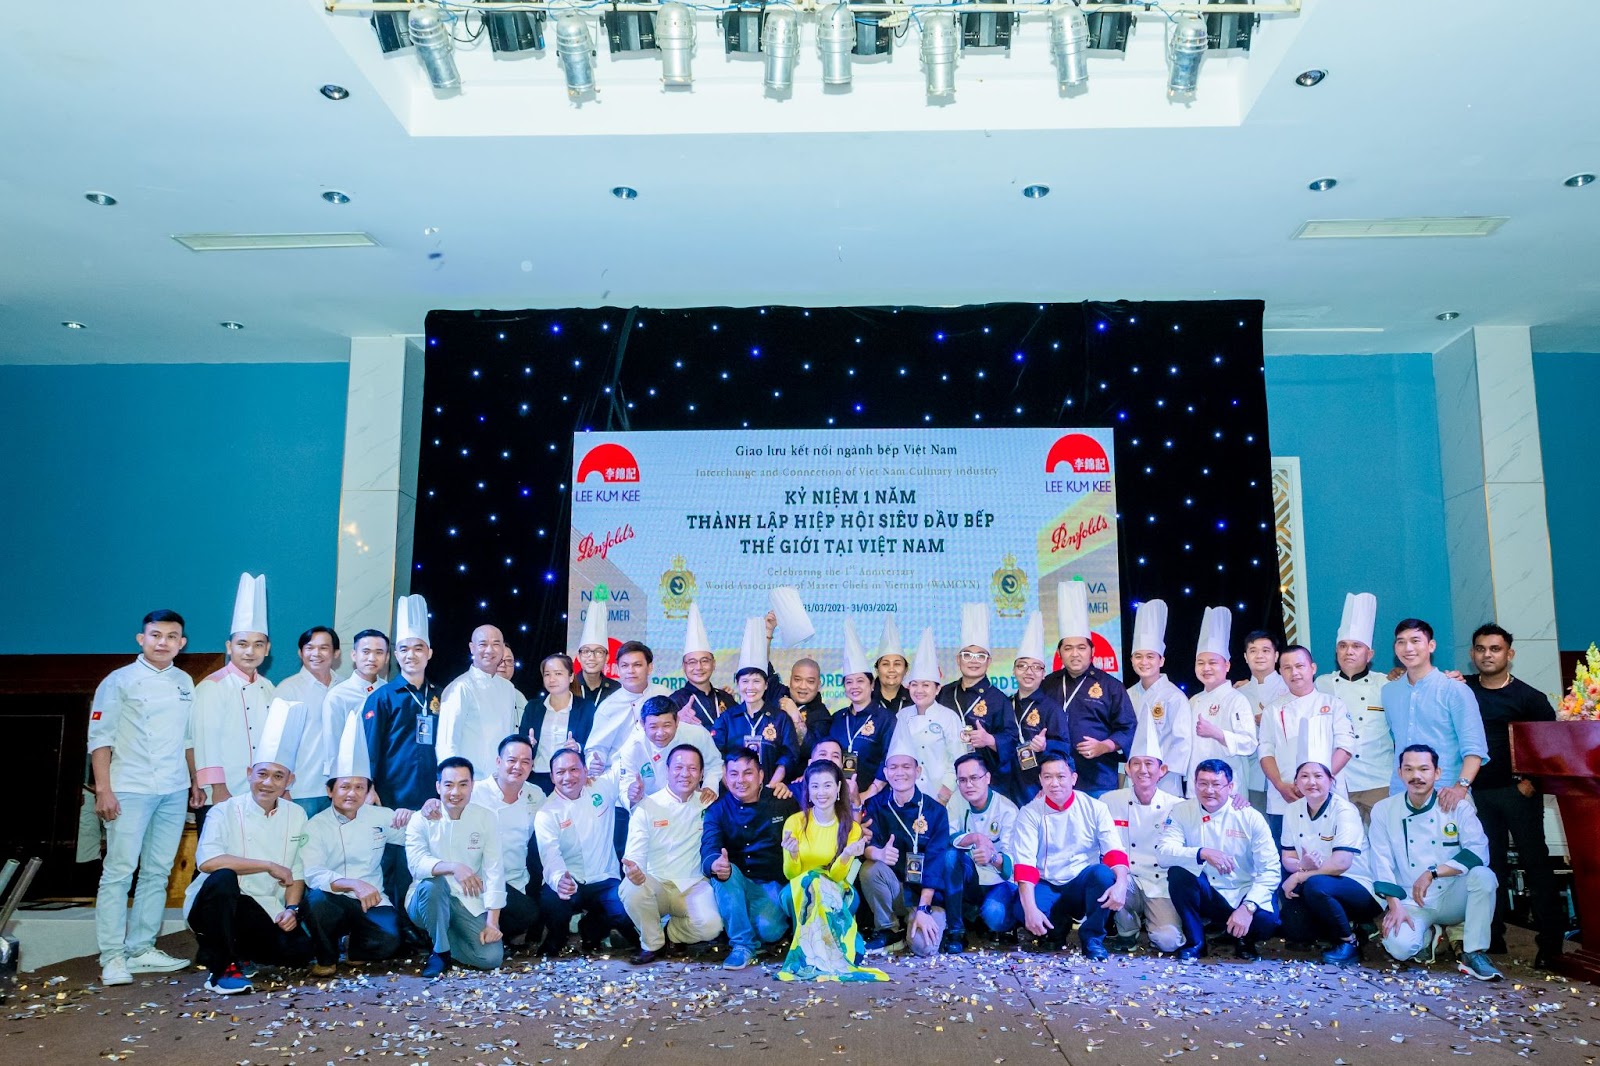 Hiệp hội Siêu đầu bếp Thế giới tại Việt Nam kỷ niệm 1 năm thành lập - 1